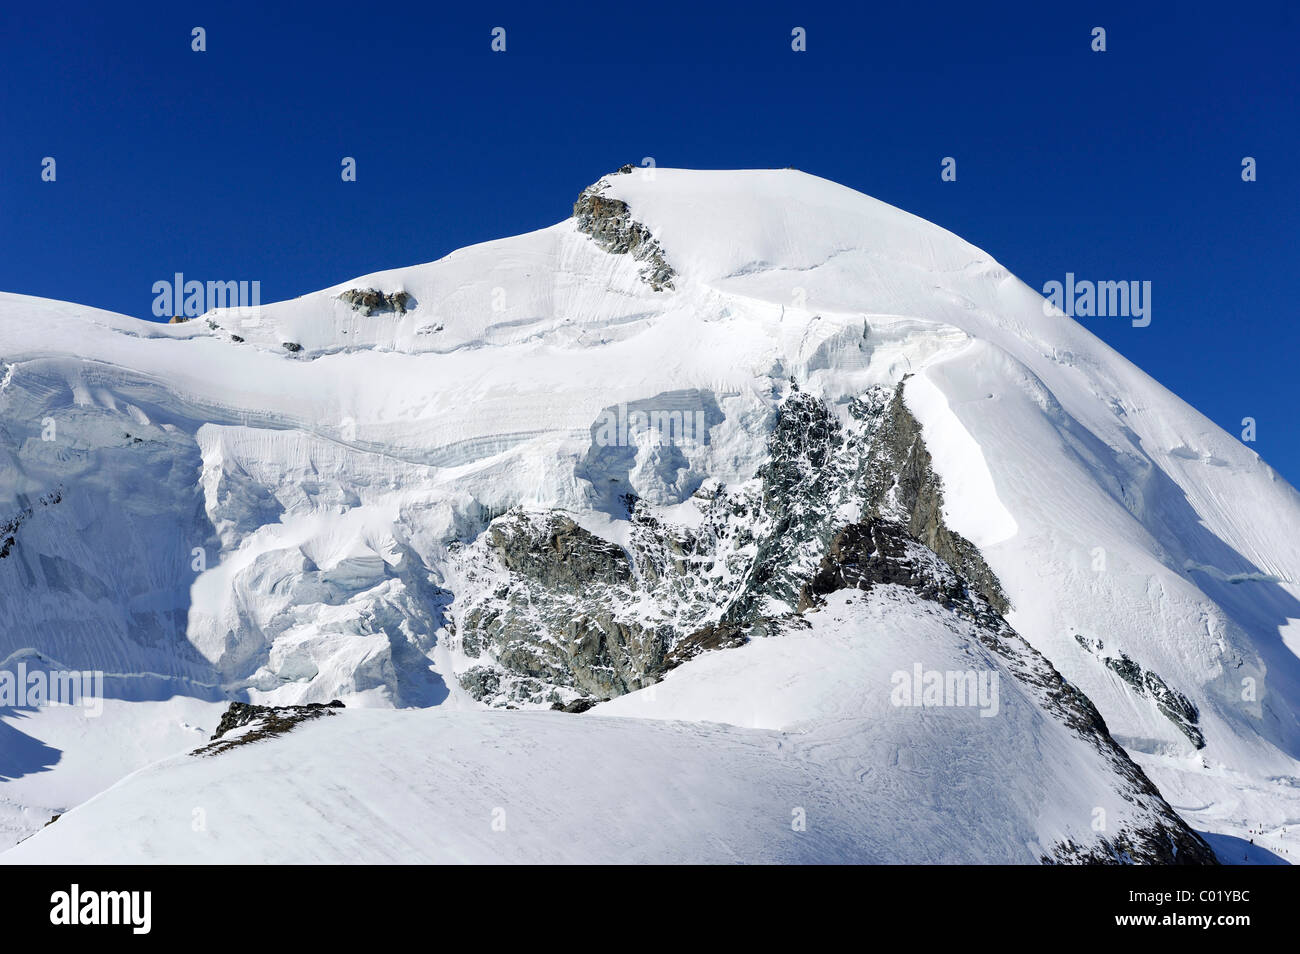 Mt. Allalinhorn, Pennine Alps near Saas Fee, Valais, Switzerland, Europe Stock Photo